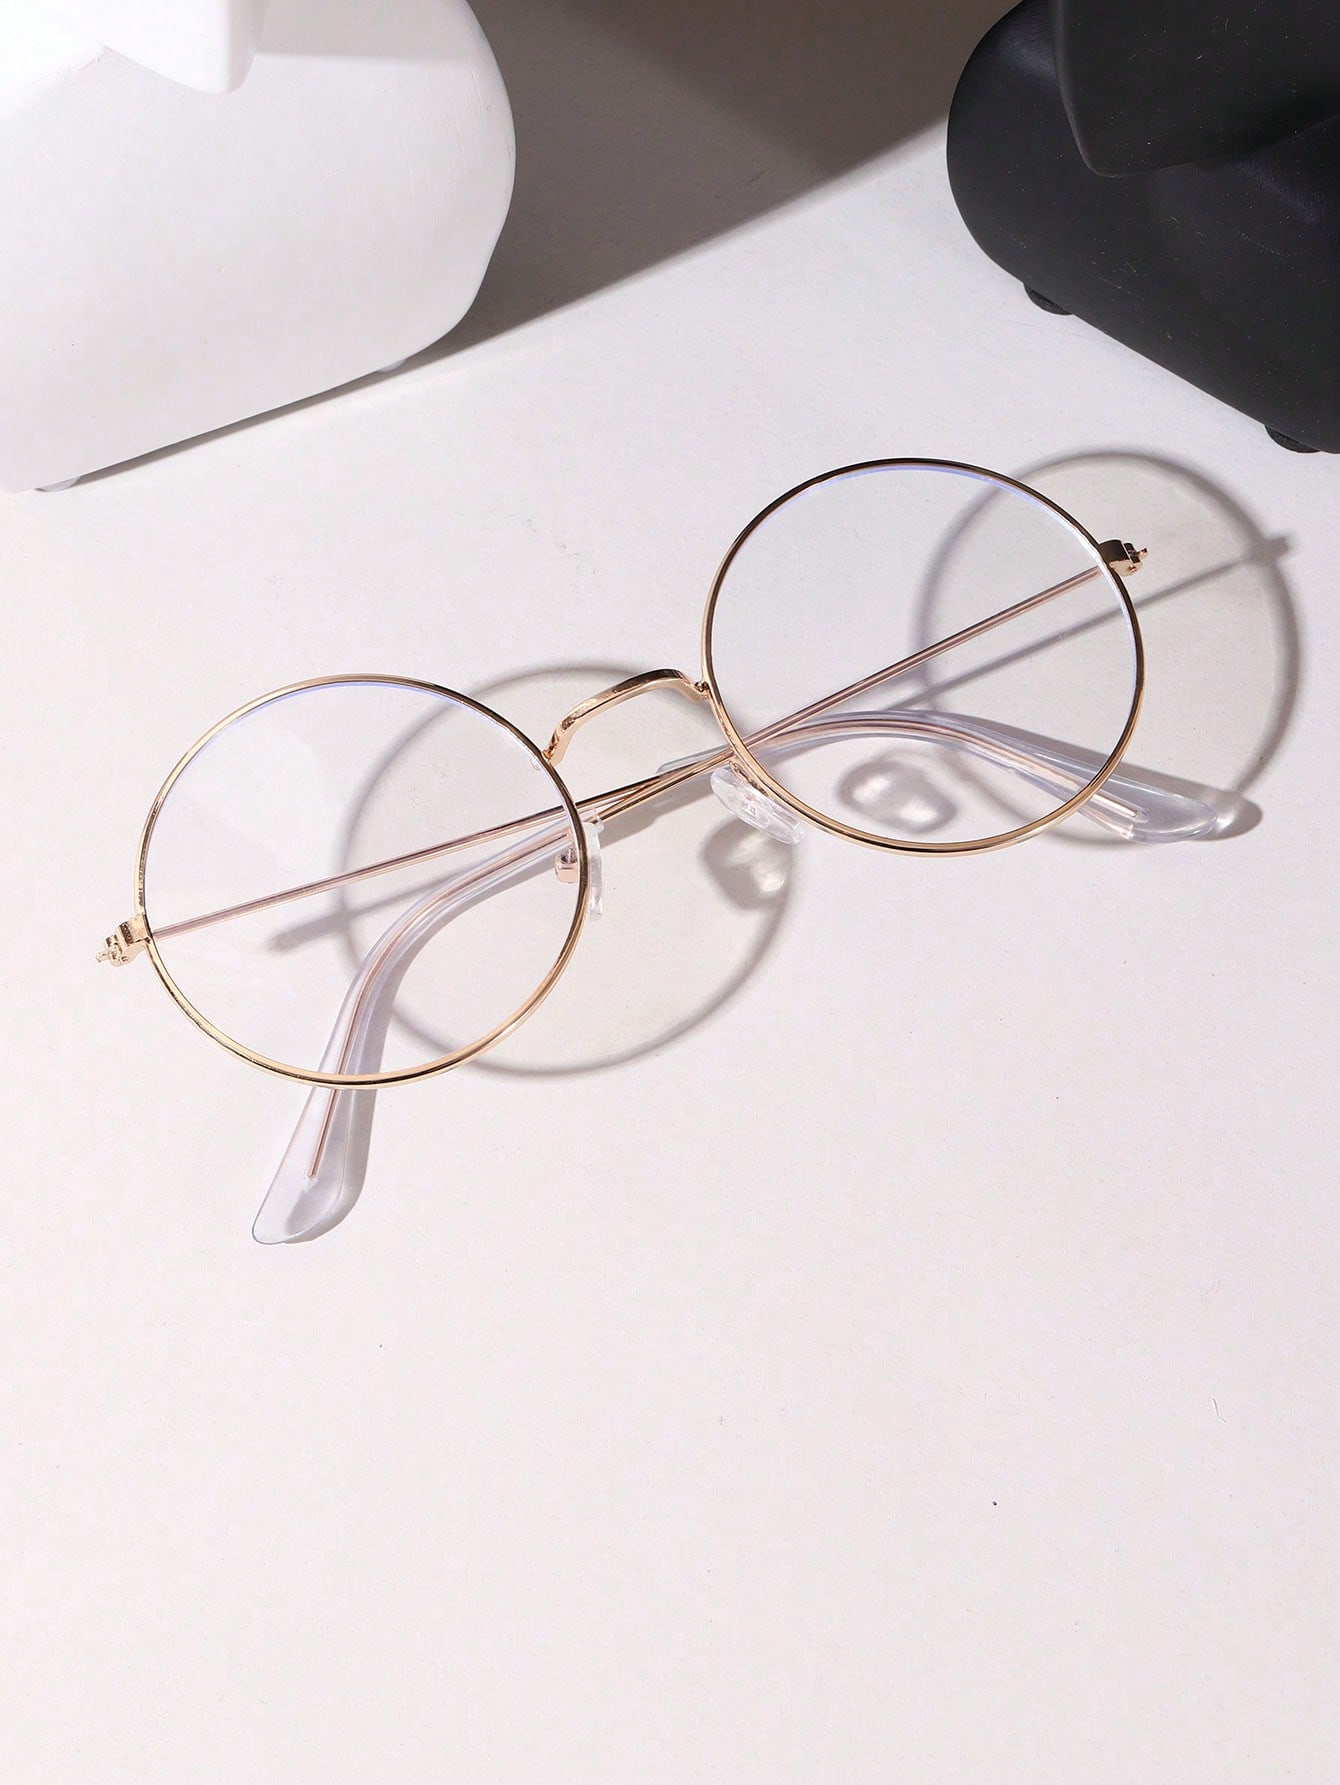 1 шт. винтажные круглые очки Гарри Поттера унисекс с прозрачными линзами